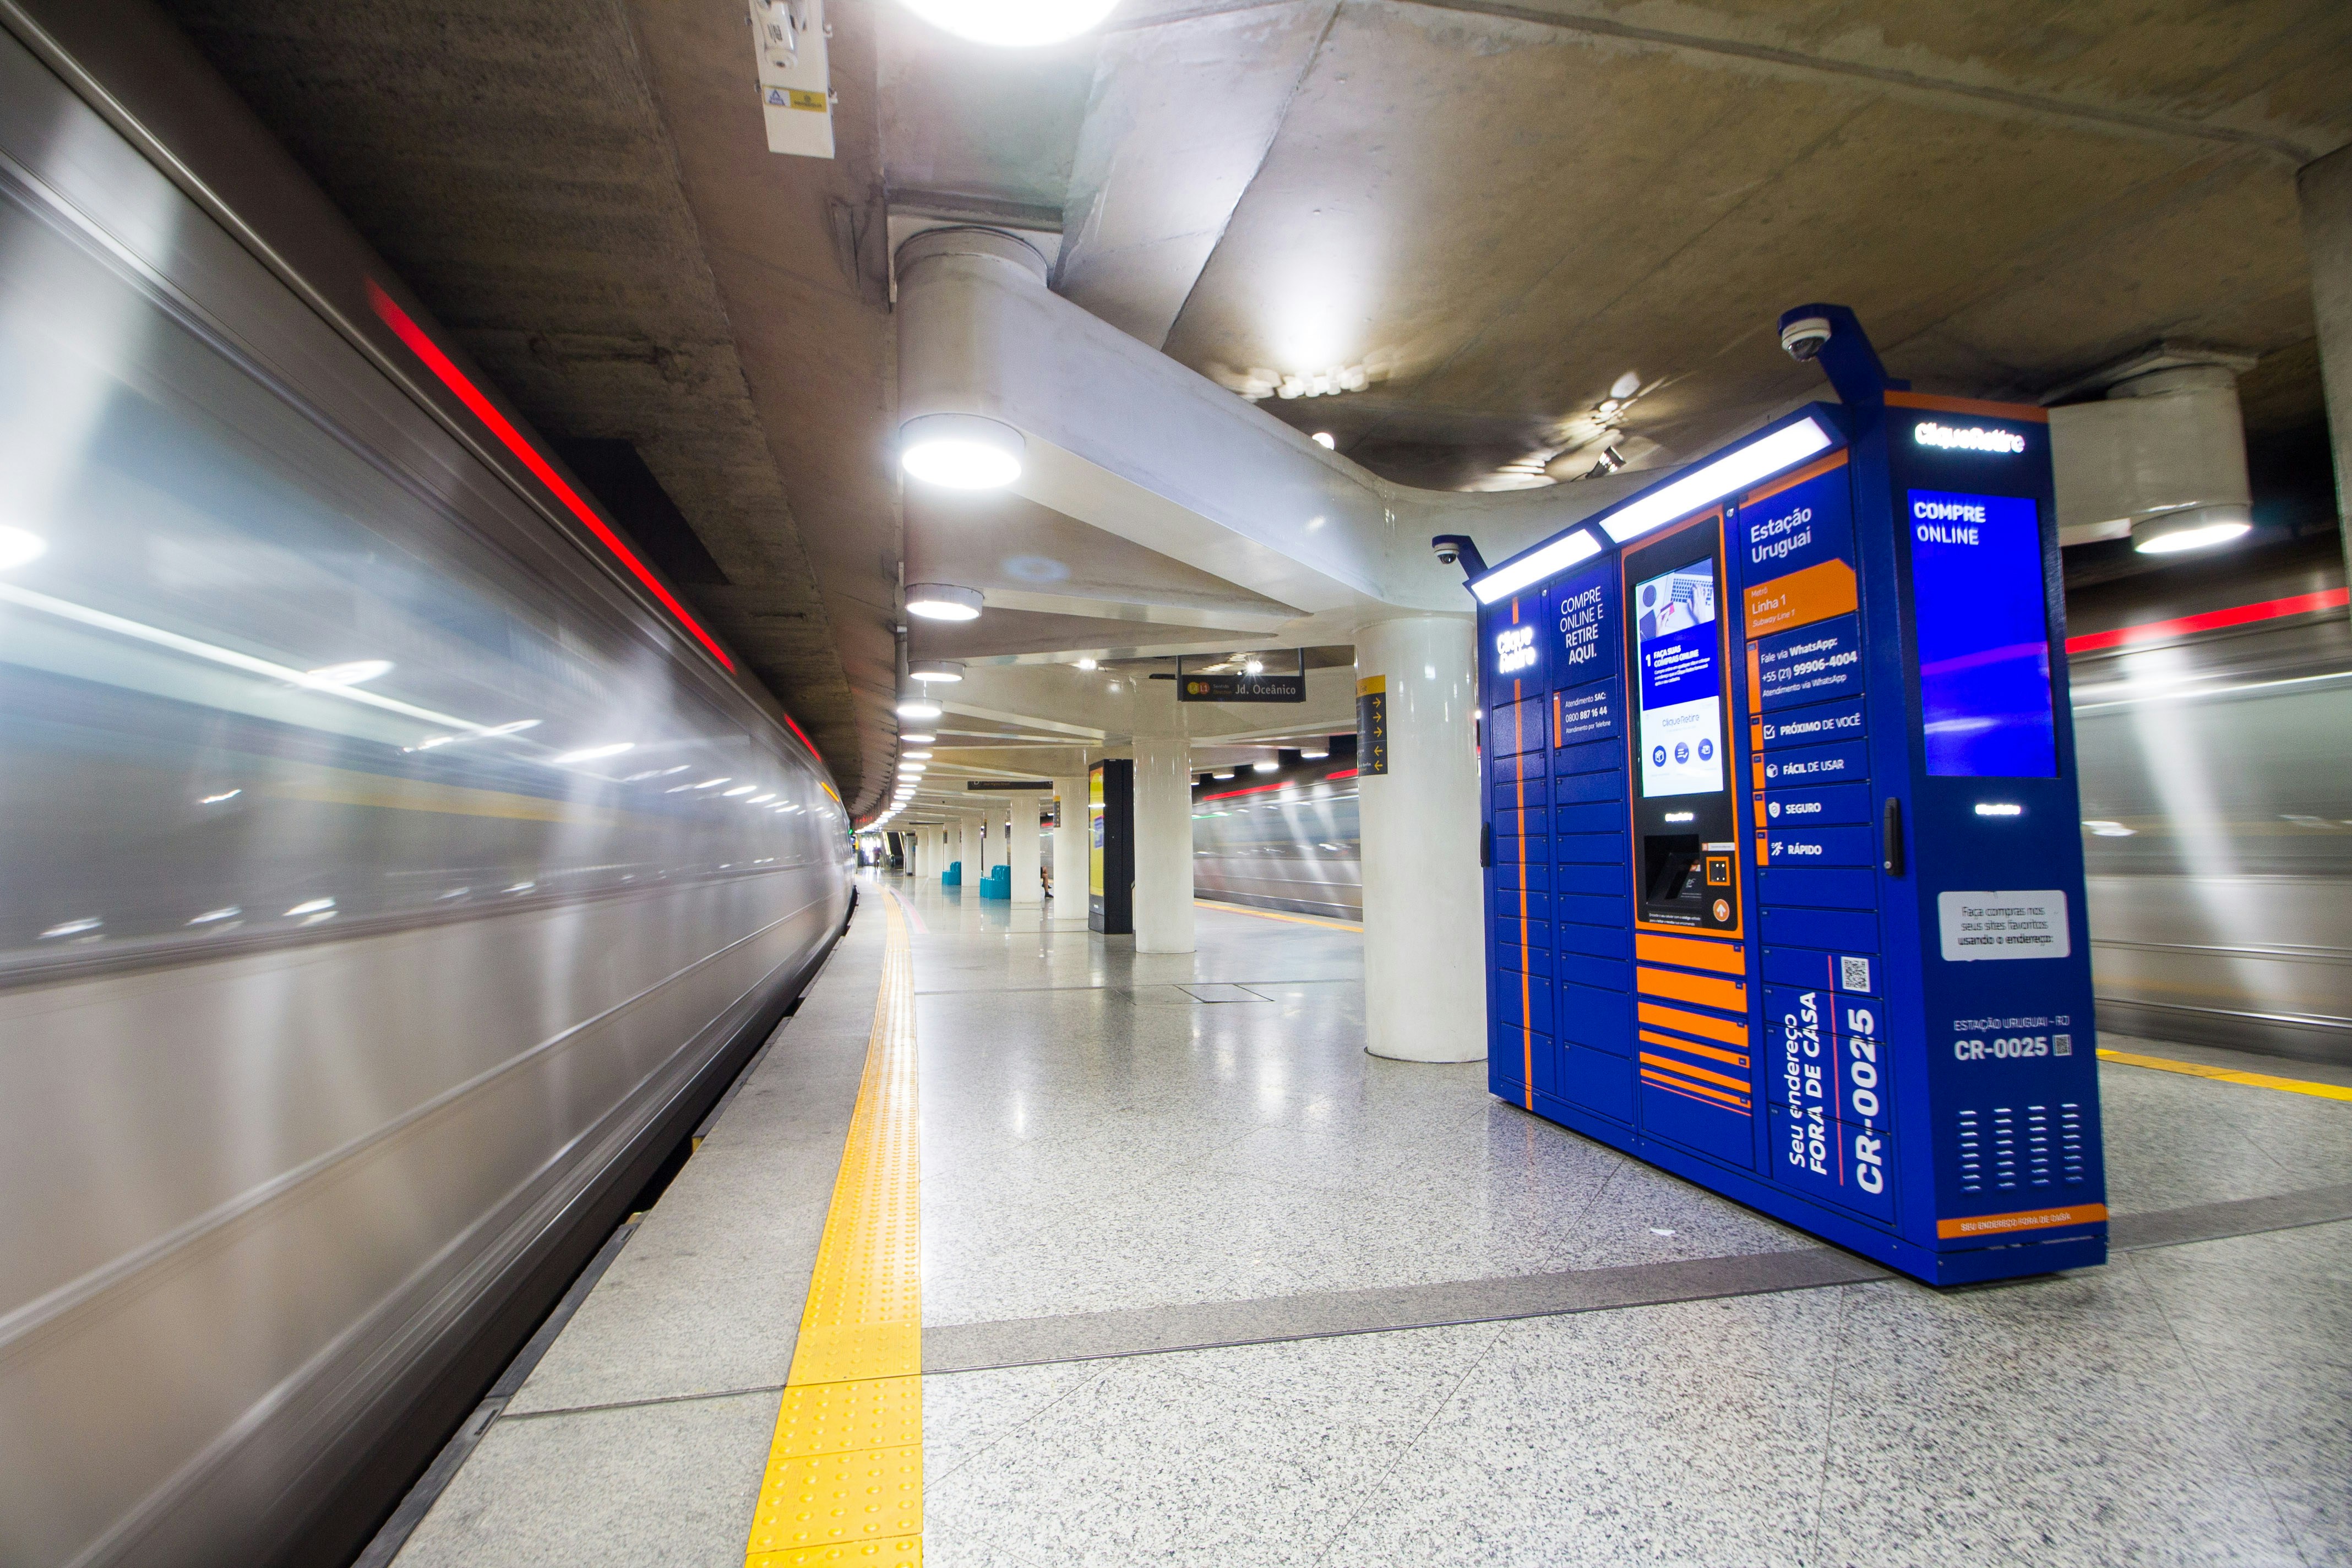 e-Box (smart locker) da Clique Retire localizado na Estação Uruguai do Metrô Rio - Rio de Janeiro, RJ - Brasil. Utilizado para receber e enviar encomendas.